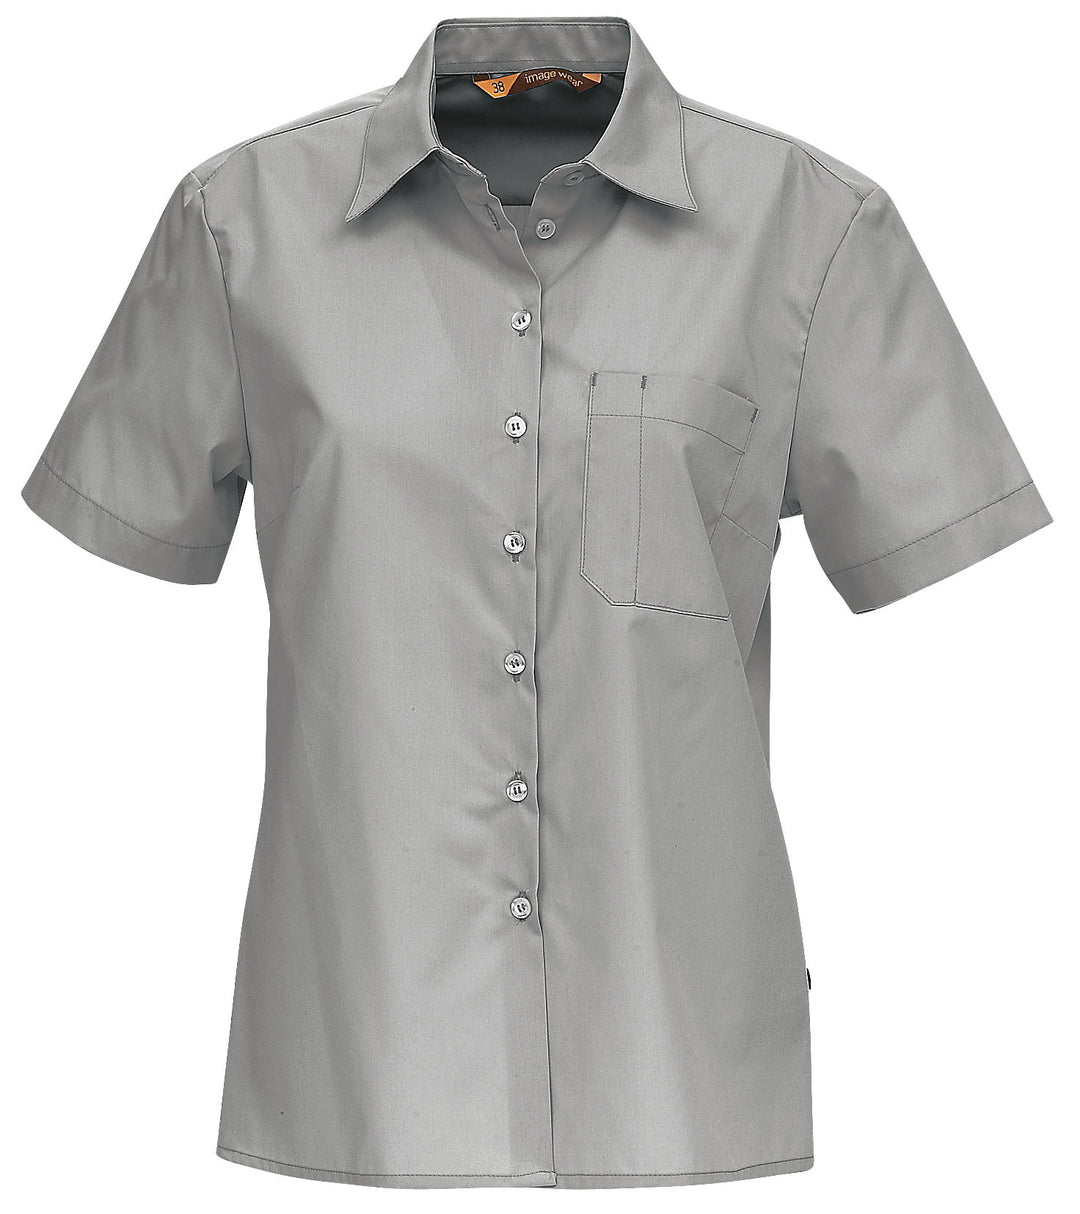 Naisten aavistuksen vartalonmyötäinen paitapusero. Paidassa rintatasku, jossa myös kynätasku. Helppohoitoinen materiaali, klassisen tyylikäs malli. 